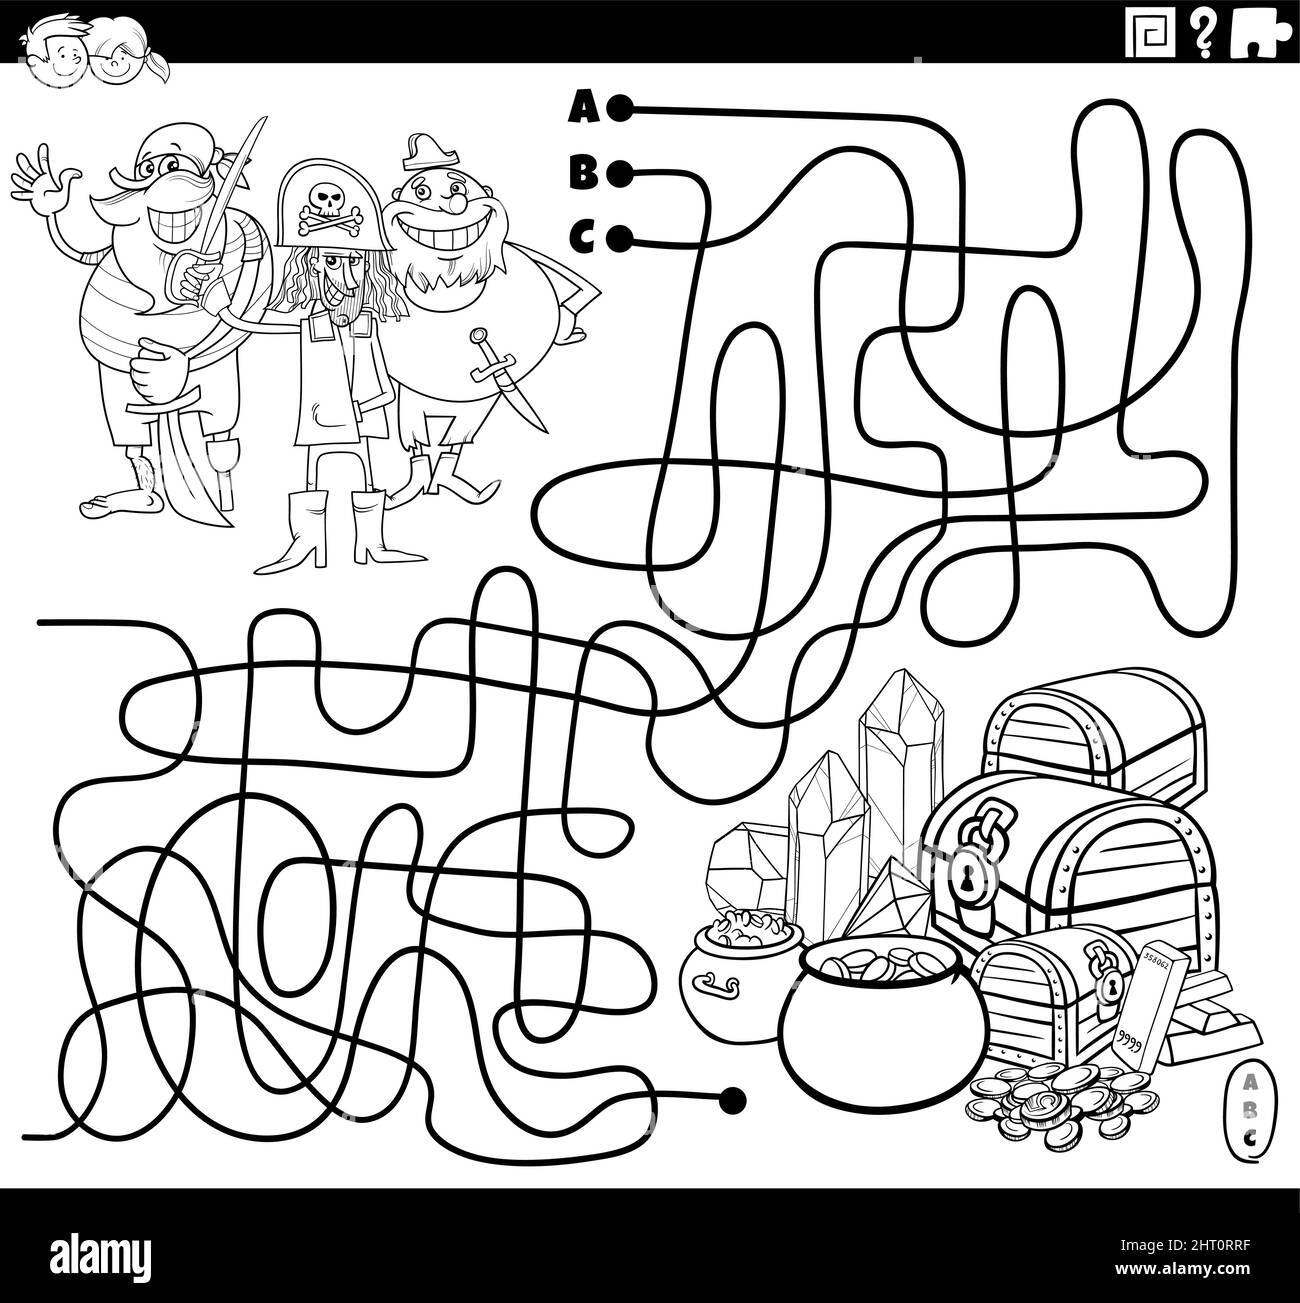 Dessin animé noir et blanc illustration de lignes labyrinthe jeu de puzzle avec des personnages de bande dessinée pirates et de la page de livre de coloriage de Trésor Illustration de Vecteur